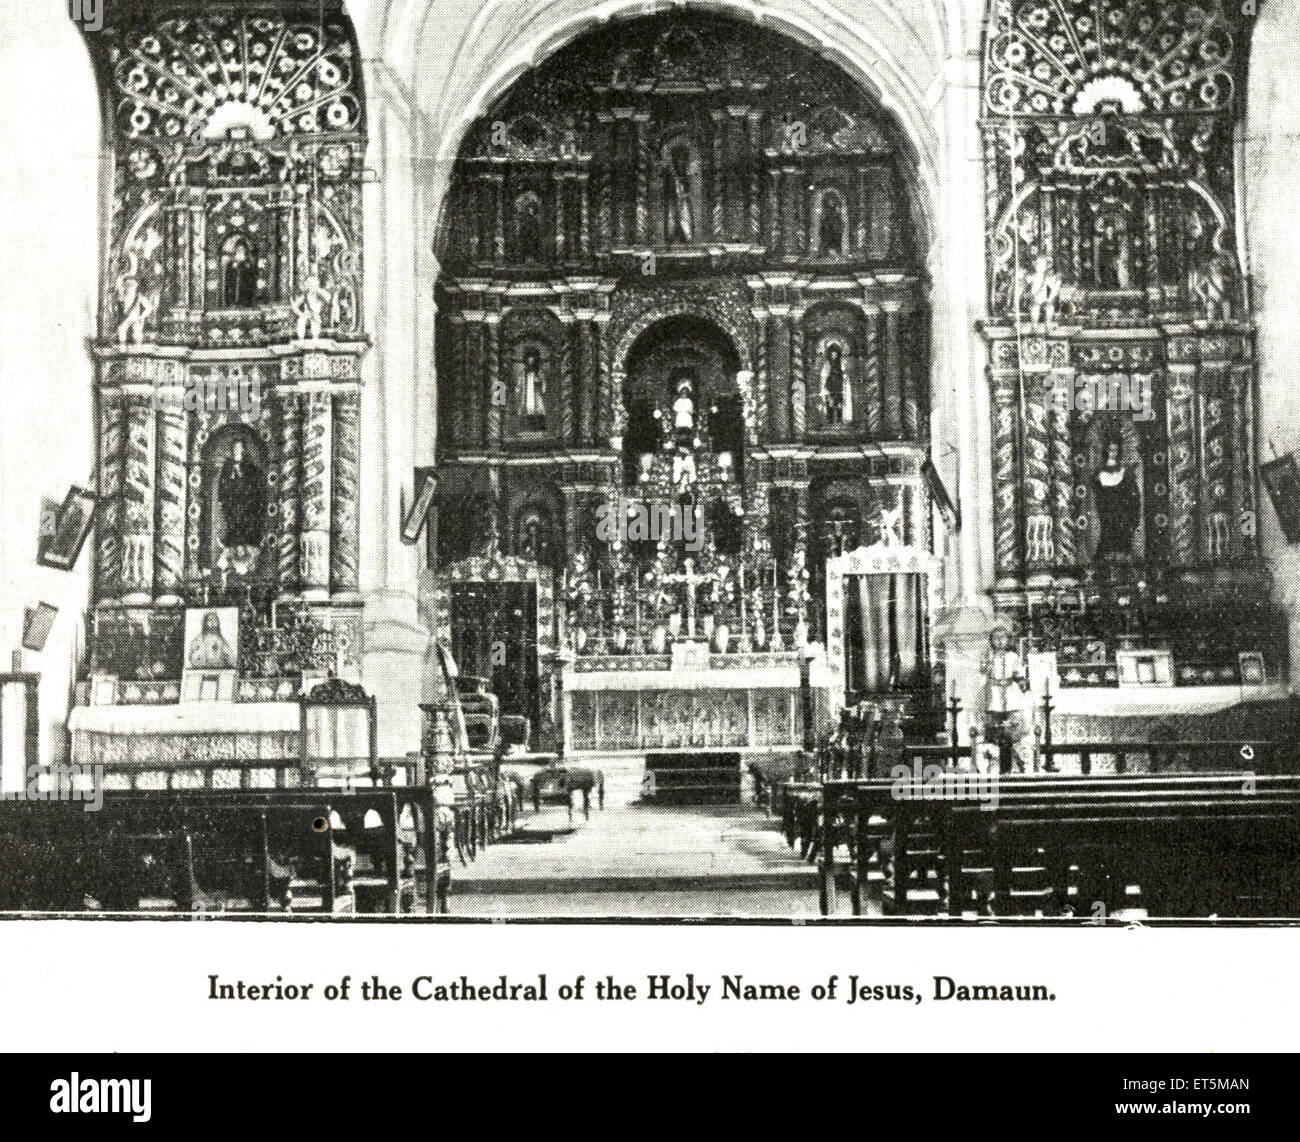 Katholische Gemeinde Innenraum der Kathedrale der Heiligen Namen Jesu; Damaun Daman; Indien-UT Stockfoto